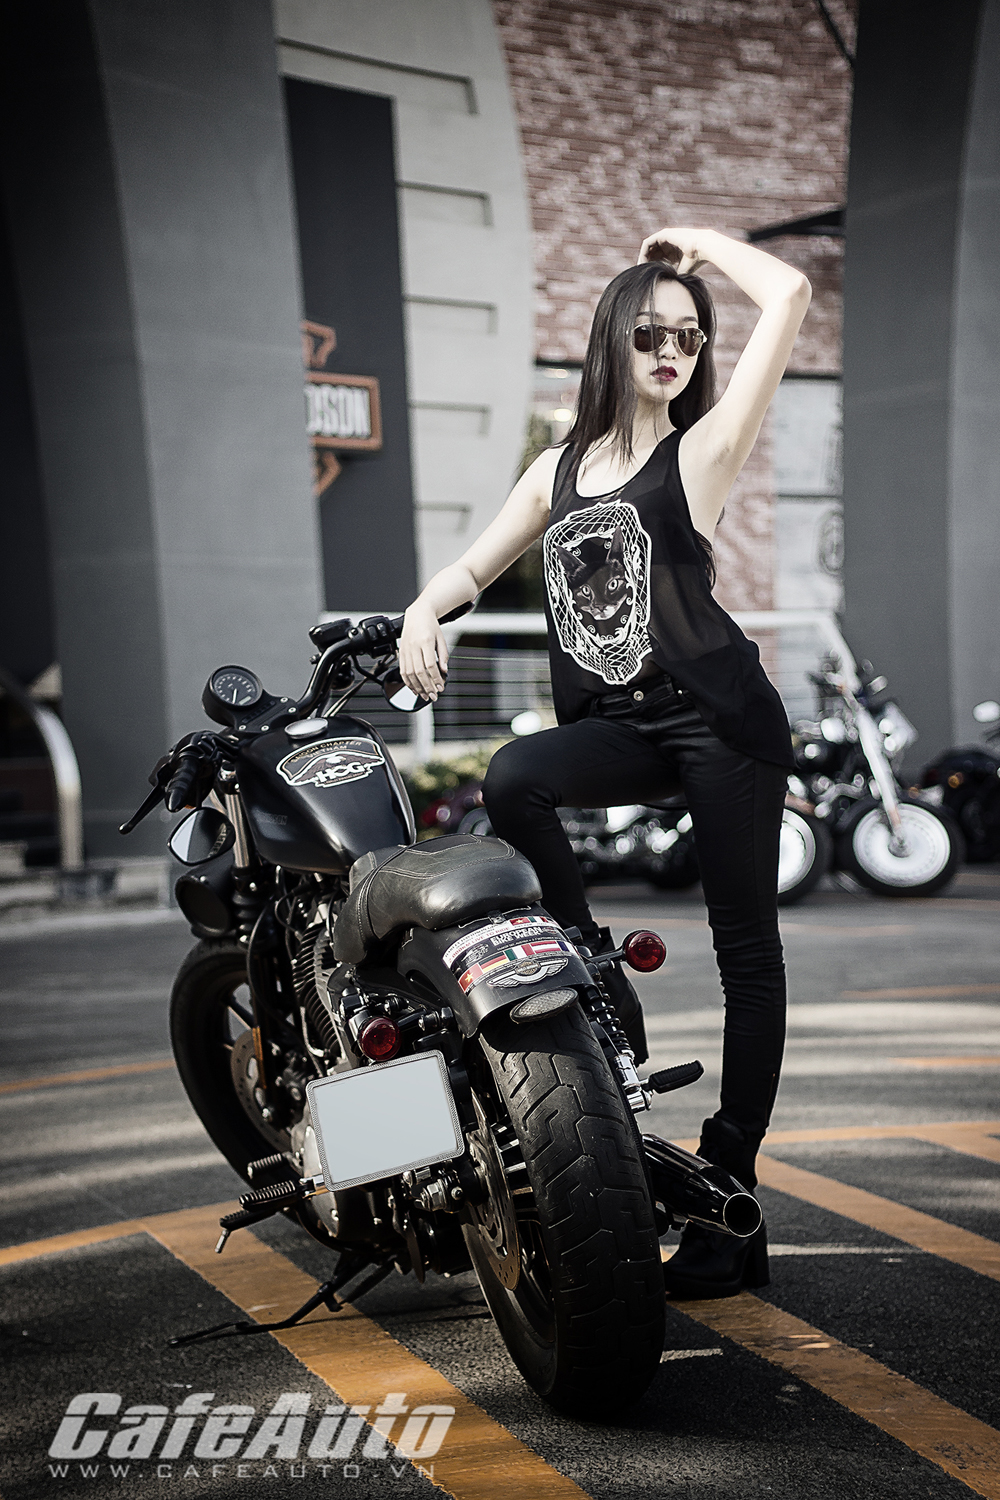 Harley Davidson Sportster Iron manh me ben nguoi dep chan dai - 7